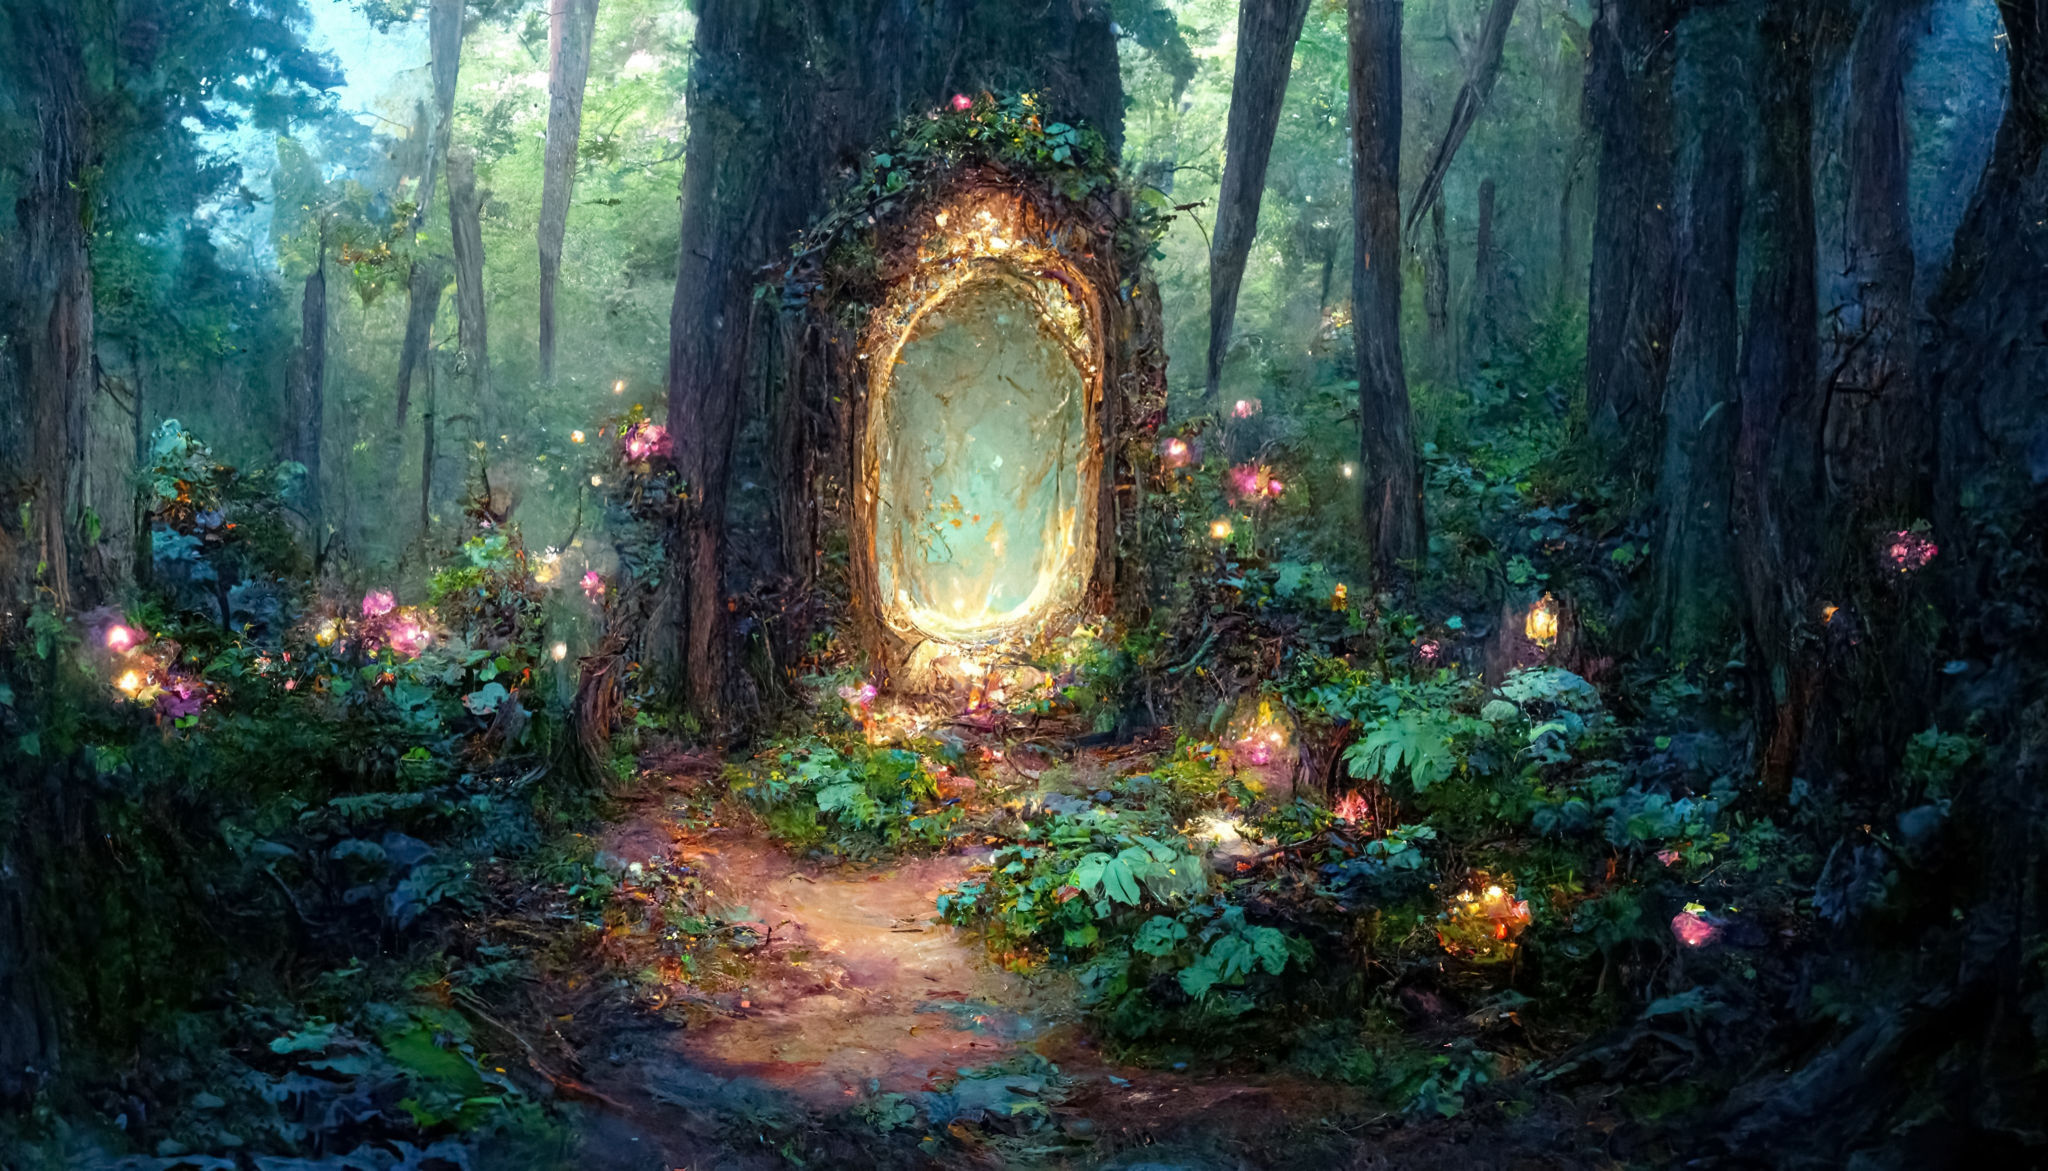 magic garden